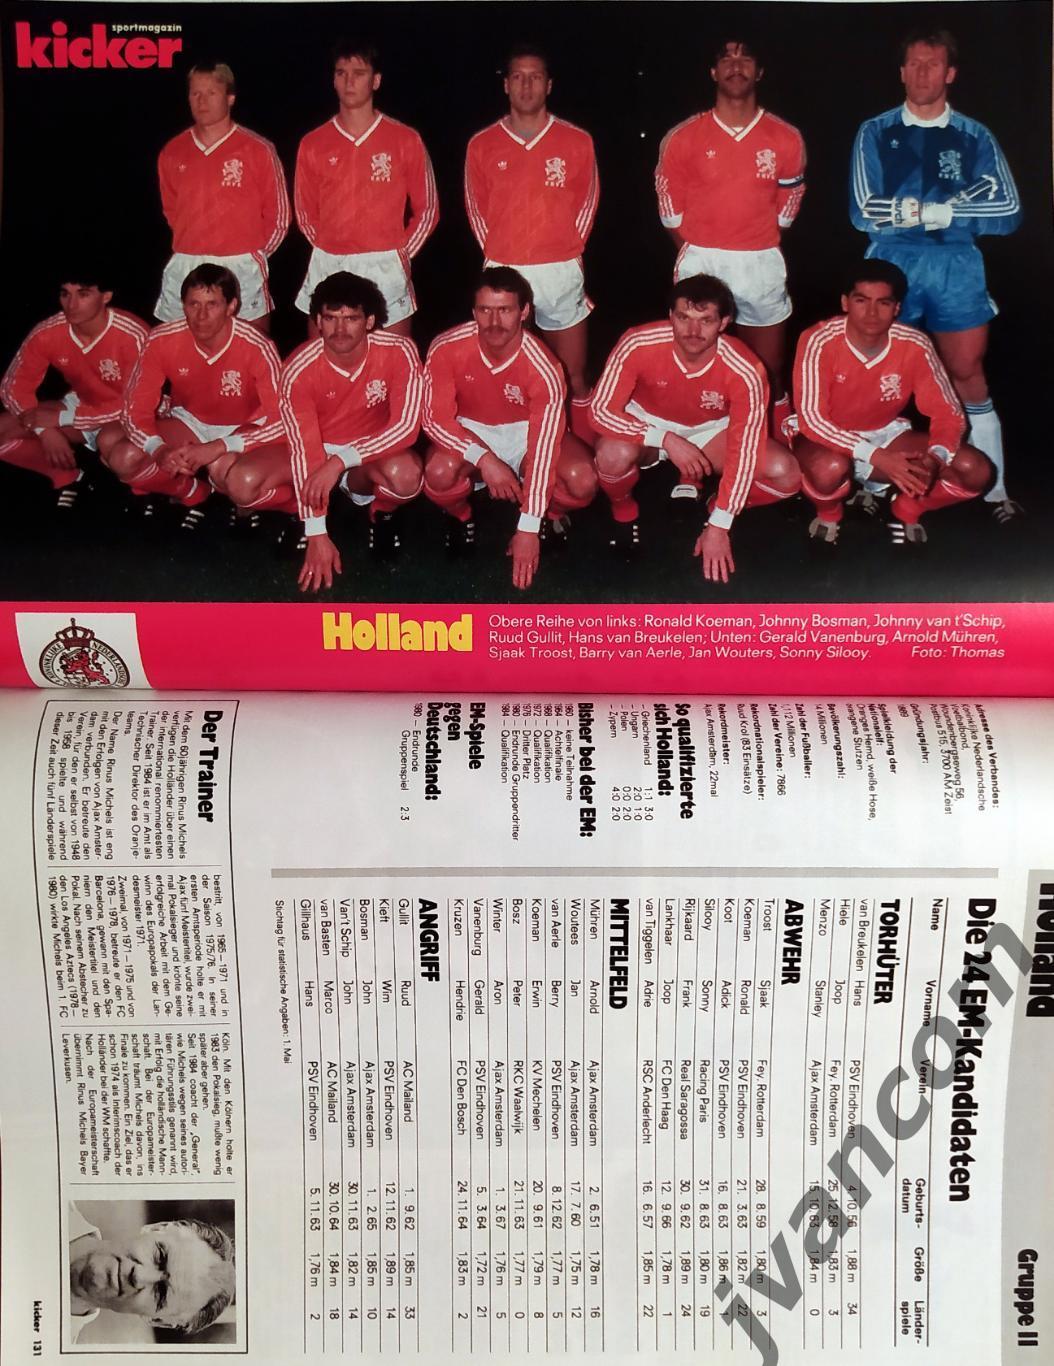 KICKER SONDERHEFT. Чемпионат Европы по футболу 1988 года. Превью участников. 3